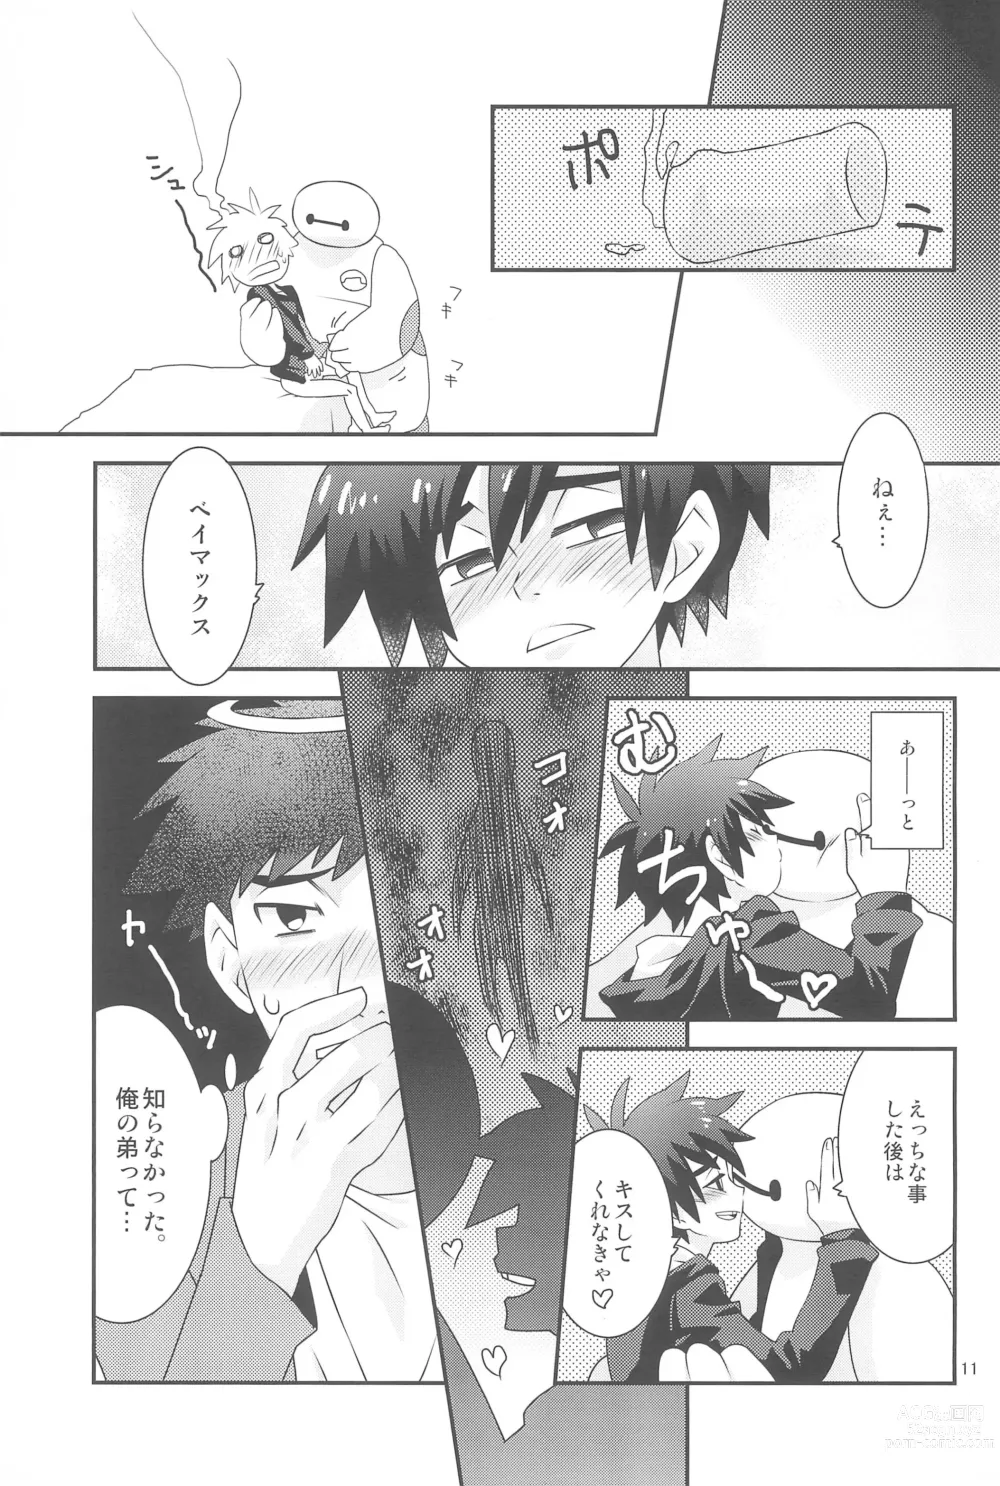 Page 11 of doujinshi Hiro-kun no Hajimete.